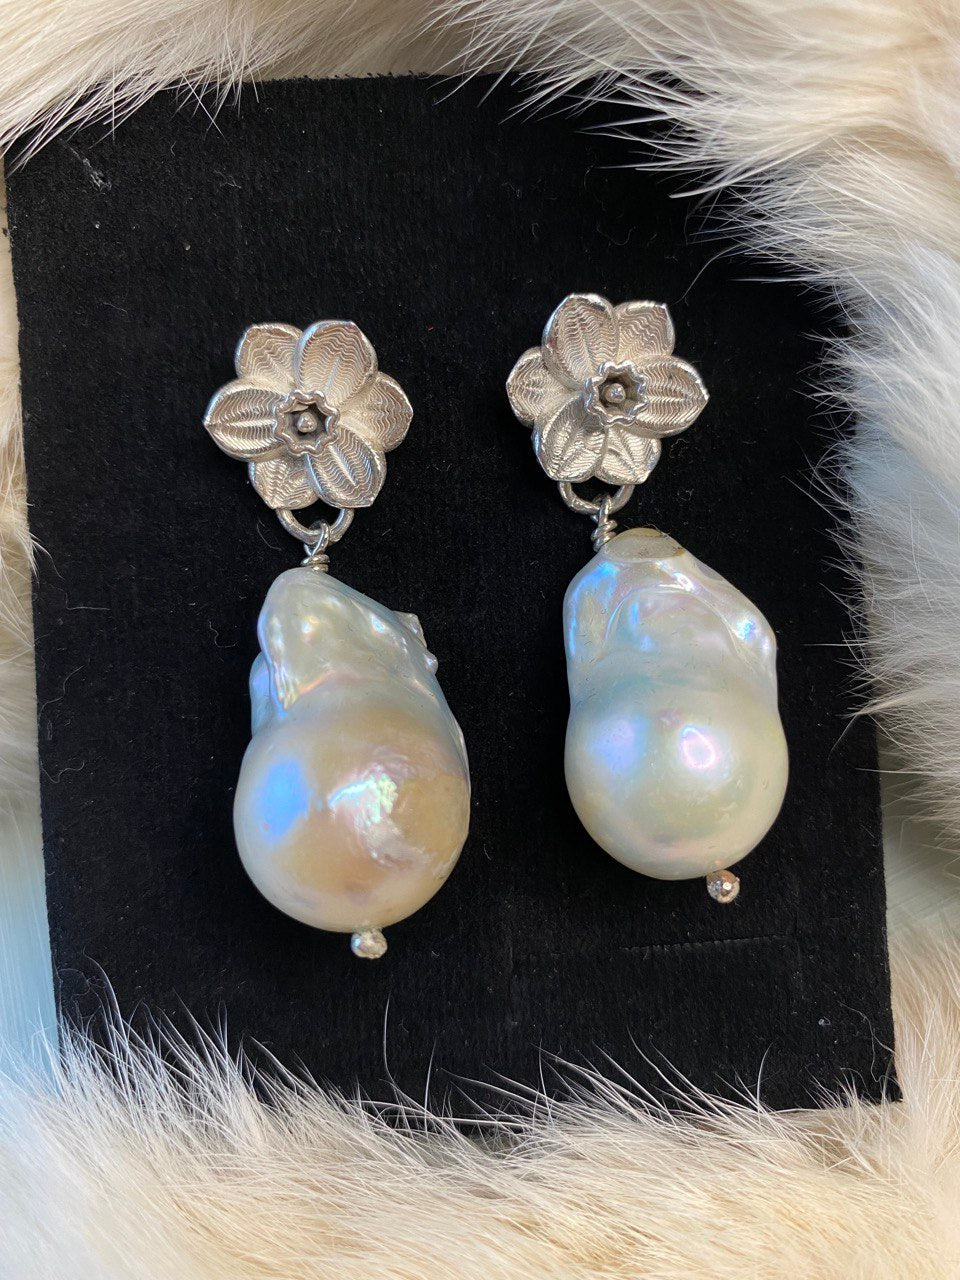 Narcissus Flower earrings